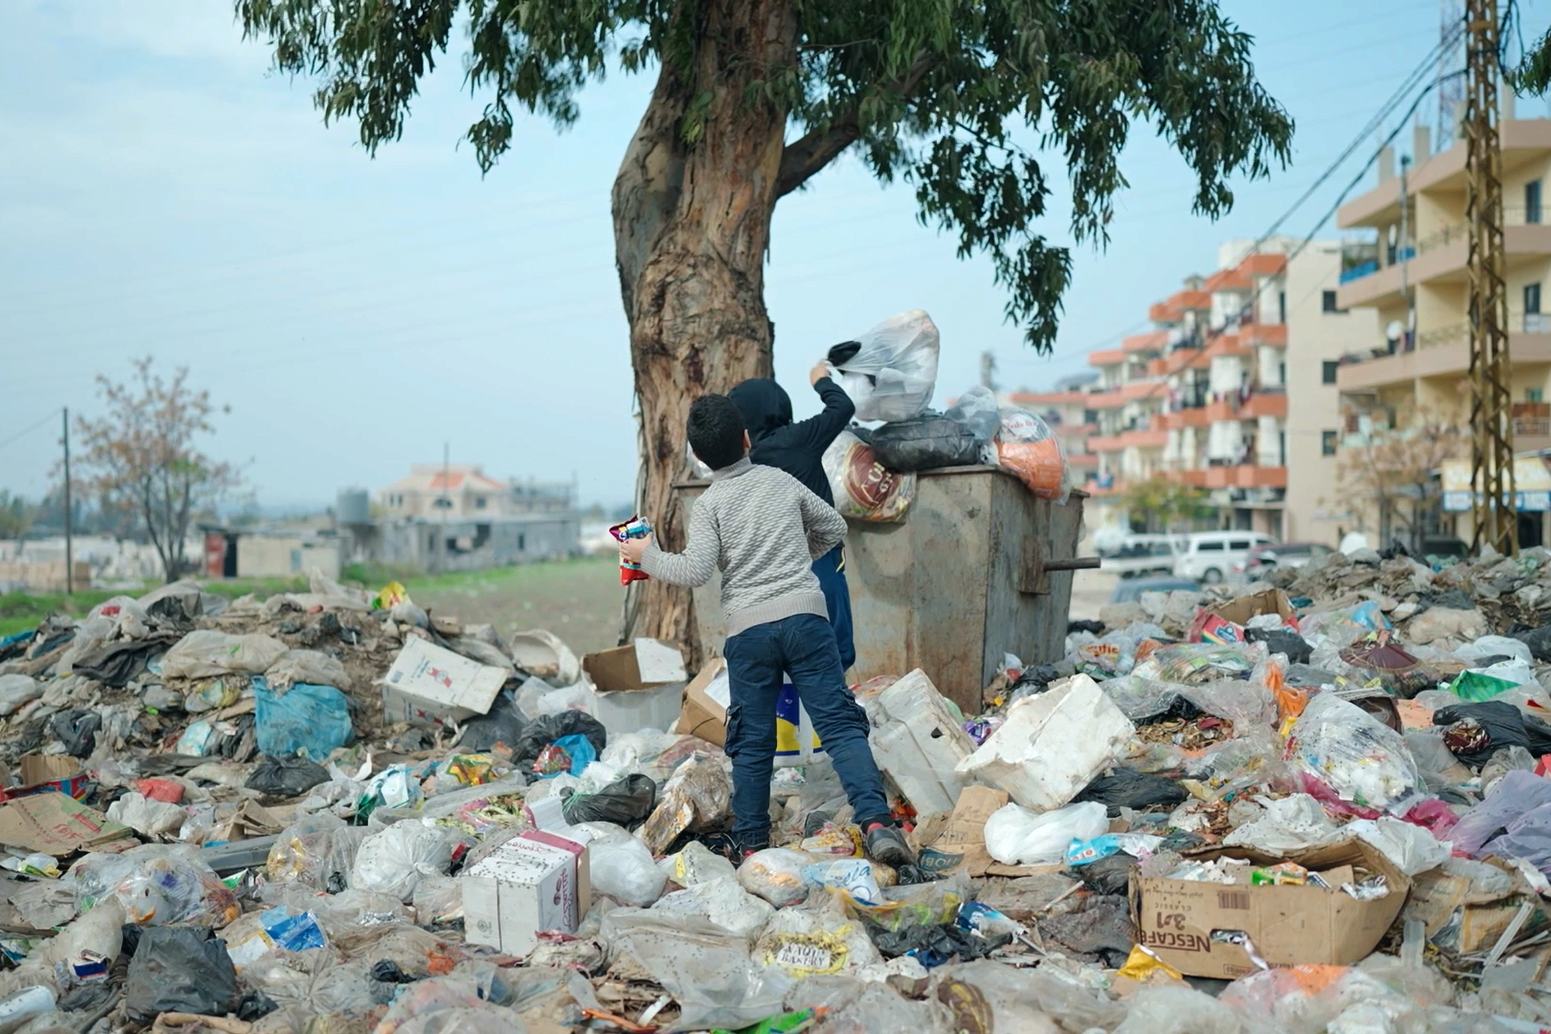 أطفال يرمون القمامة في الحاوية الممتلئة بأكياس القمامة.